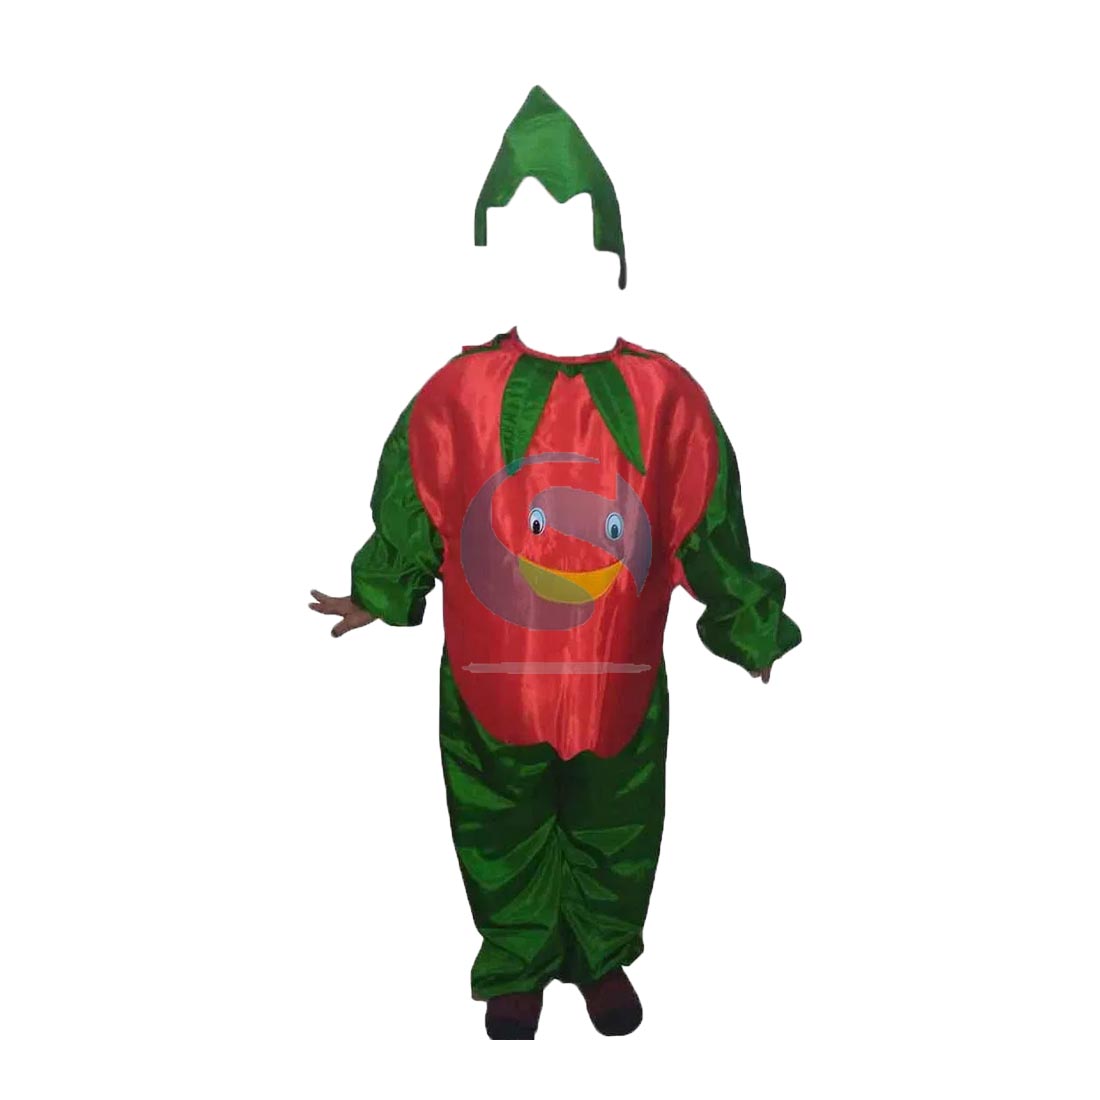 KAKU FANCY DRESSES Tomato Vegetables Costume -Red & Green, 5-6 Years, For  Boys & Girls Kids Costume Wear Price in India - Buy KAKU FANCY DRESSES  Tomato Vegetables Costume -Red & Green,